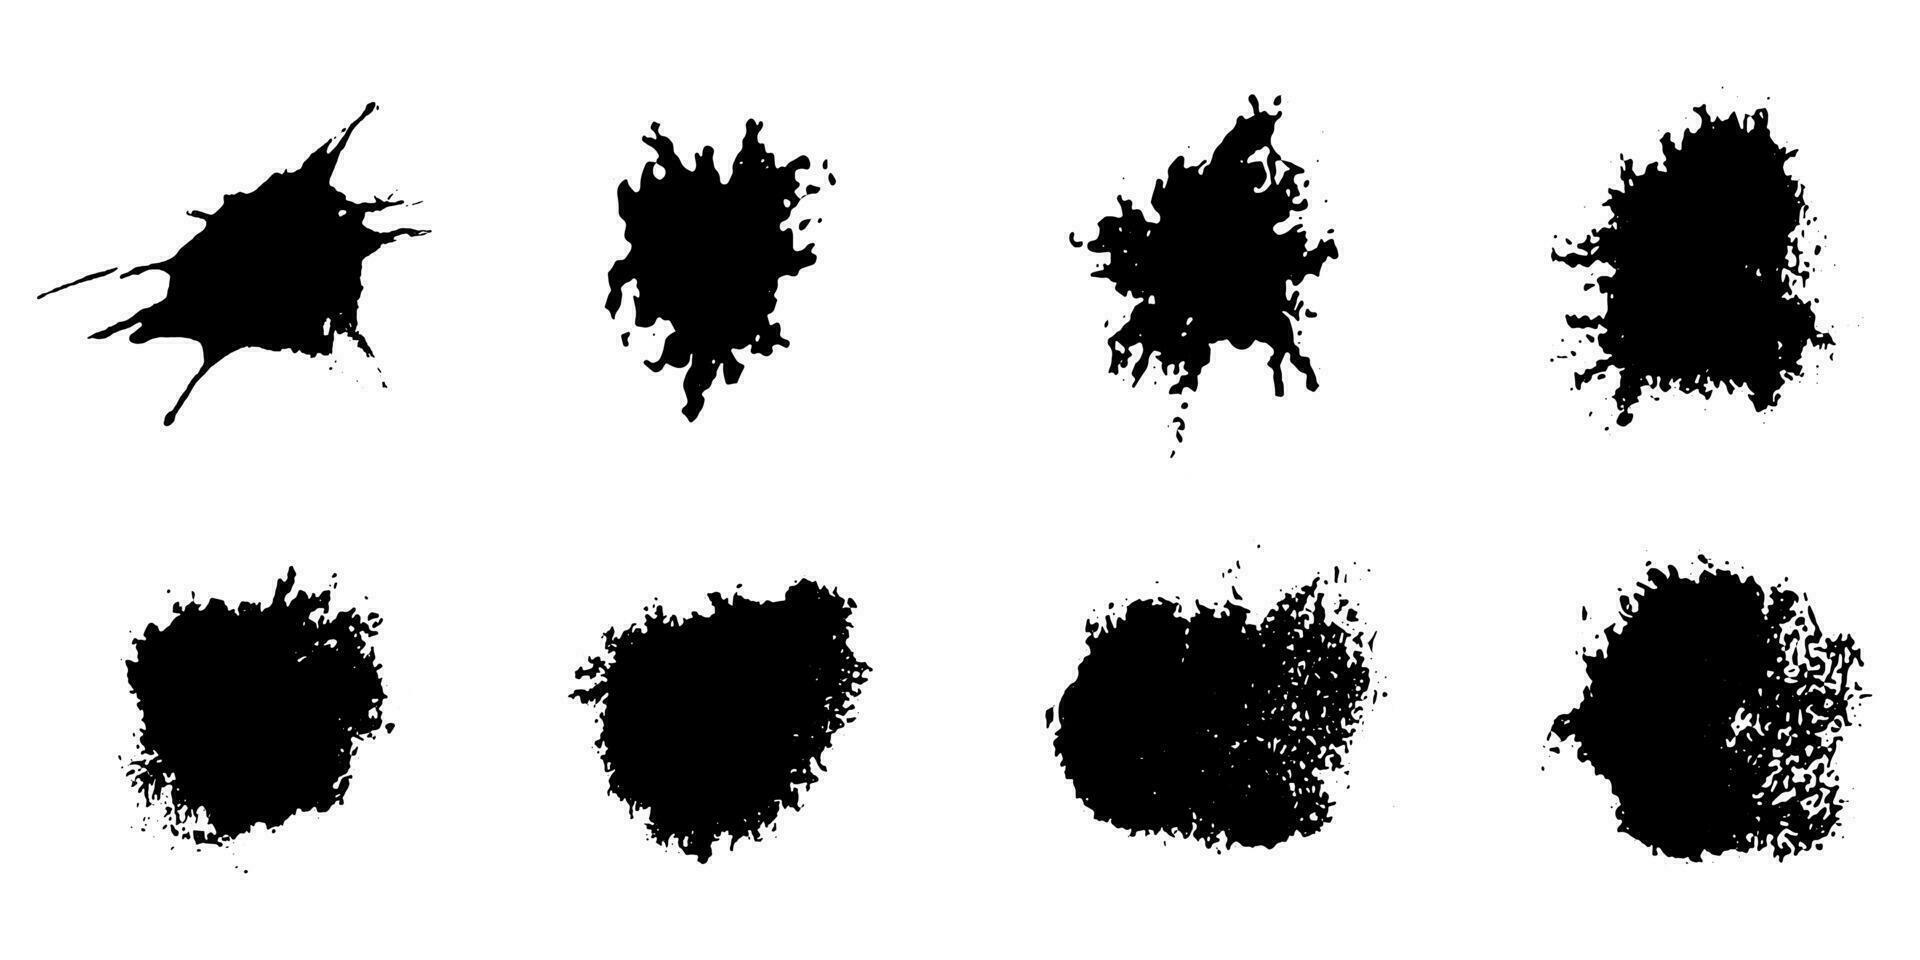 Black paint, ink splash, brushes ink droplets, blots. Black ink splatter  grunge background, isolated on white. Vector illustration Stock Vector